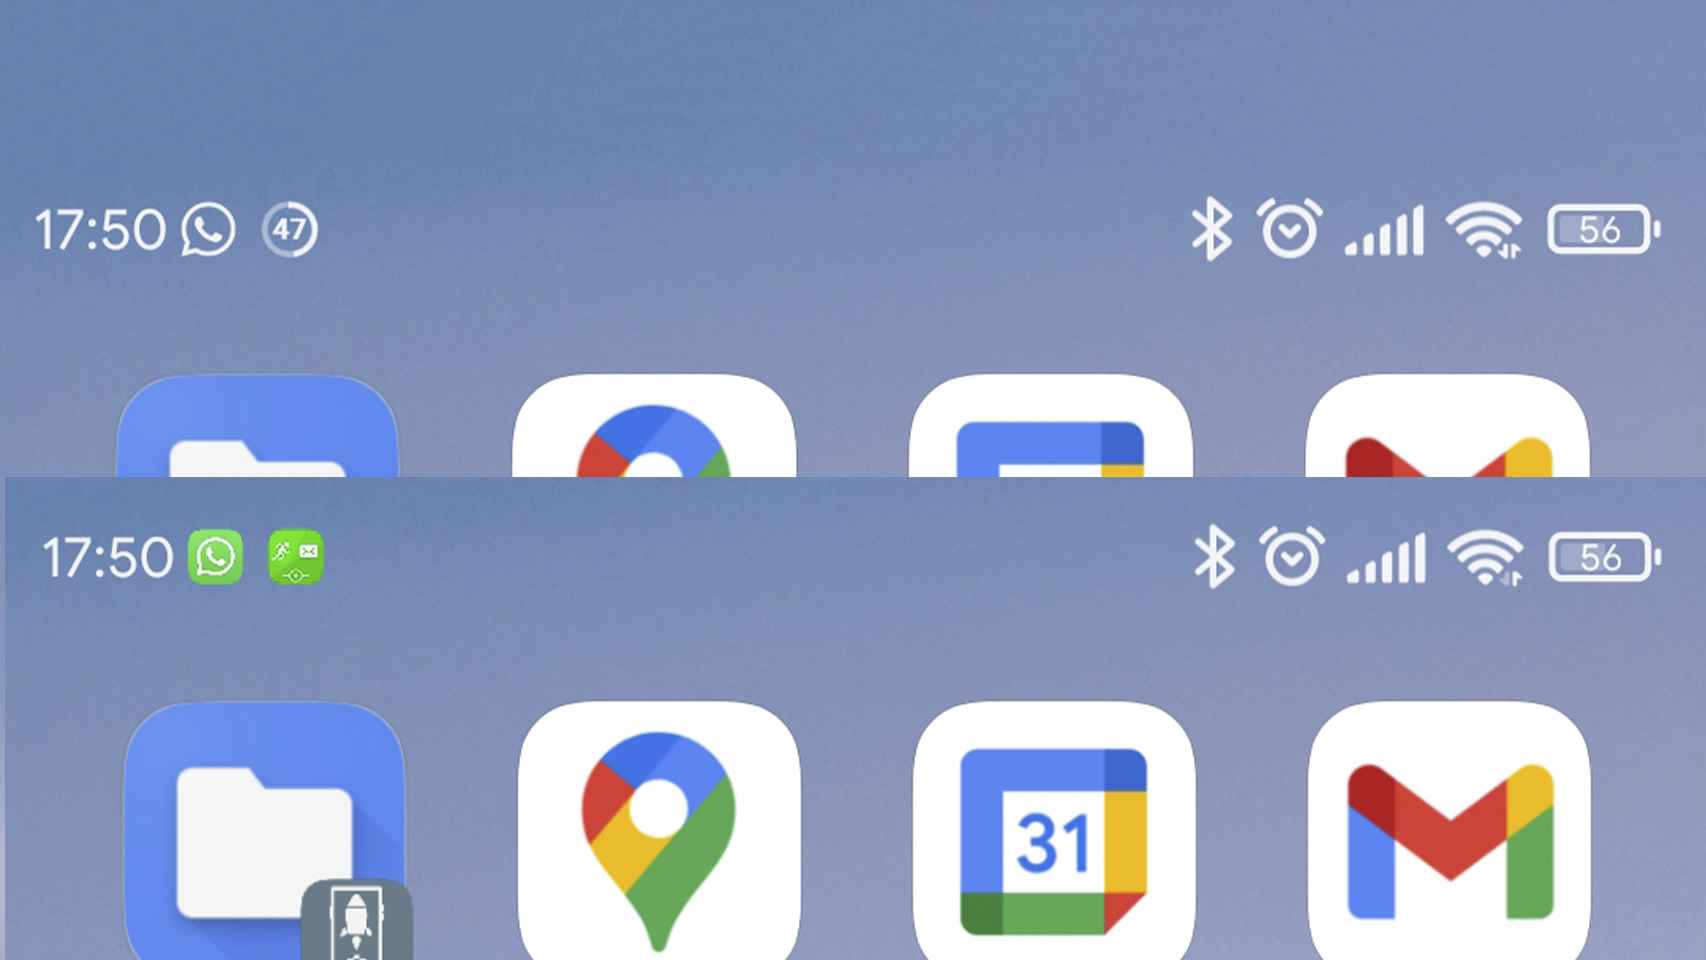 Notificaciones estilo Android arriba y estilo Xiaomi debajo